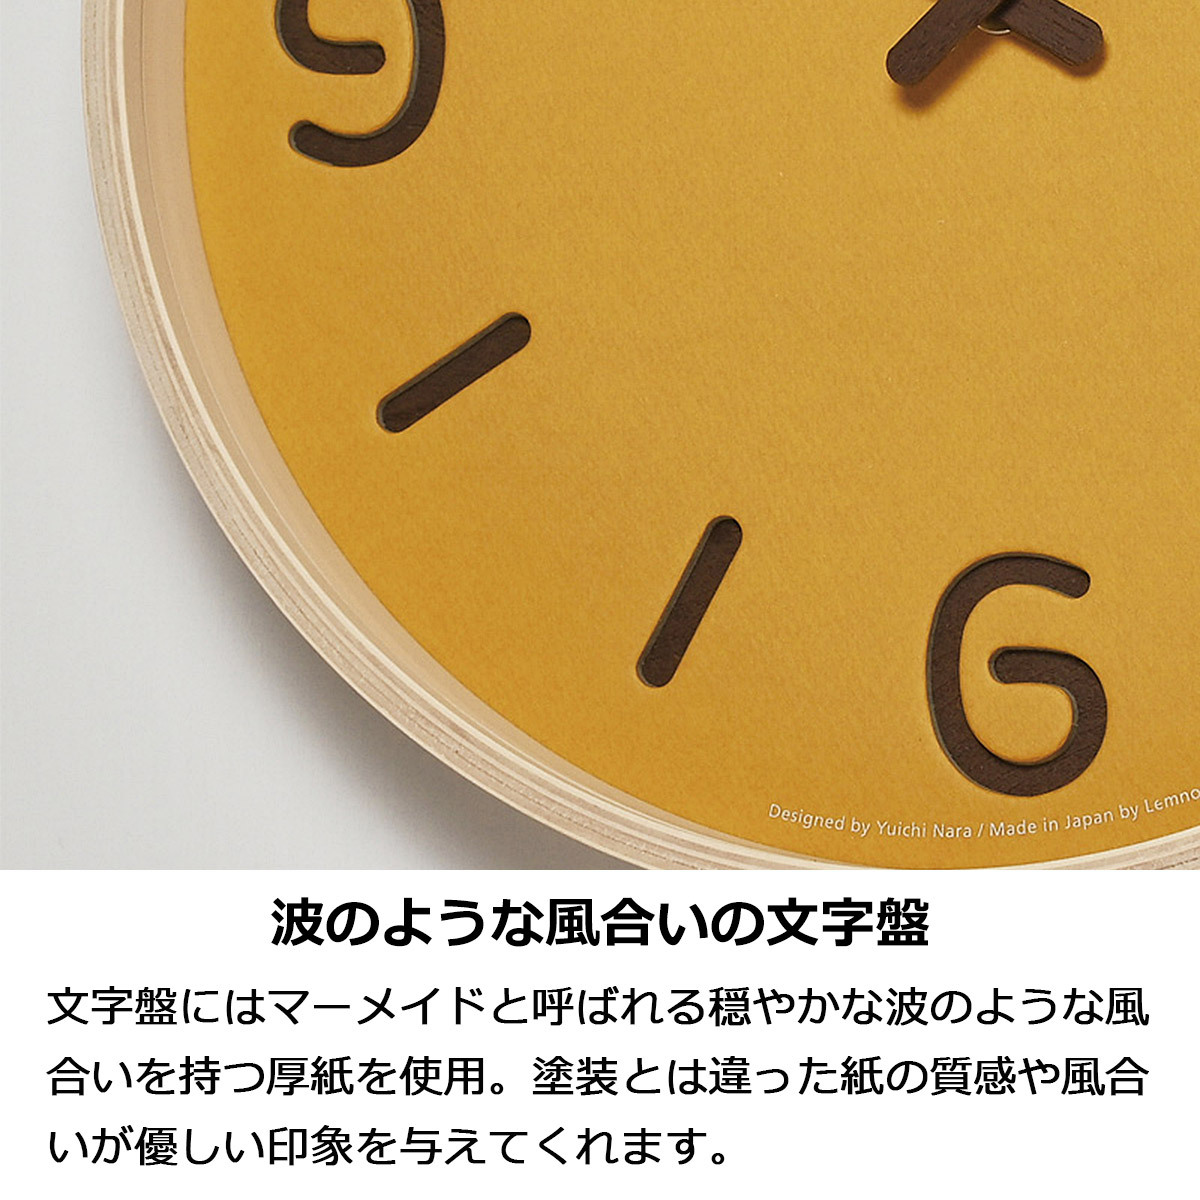 掛け時計 おしゃれ 壁掛け時計 時計 北欧 THOMSON PAPER トムソン ペーパー 木製 かわいい モダン シンプル ミニマル デザイン  NY18-15 レムノス 新生活